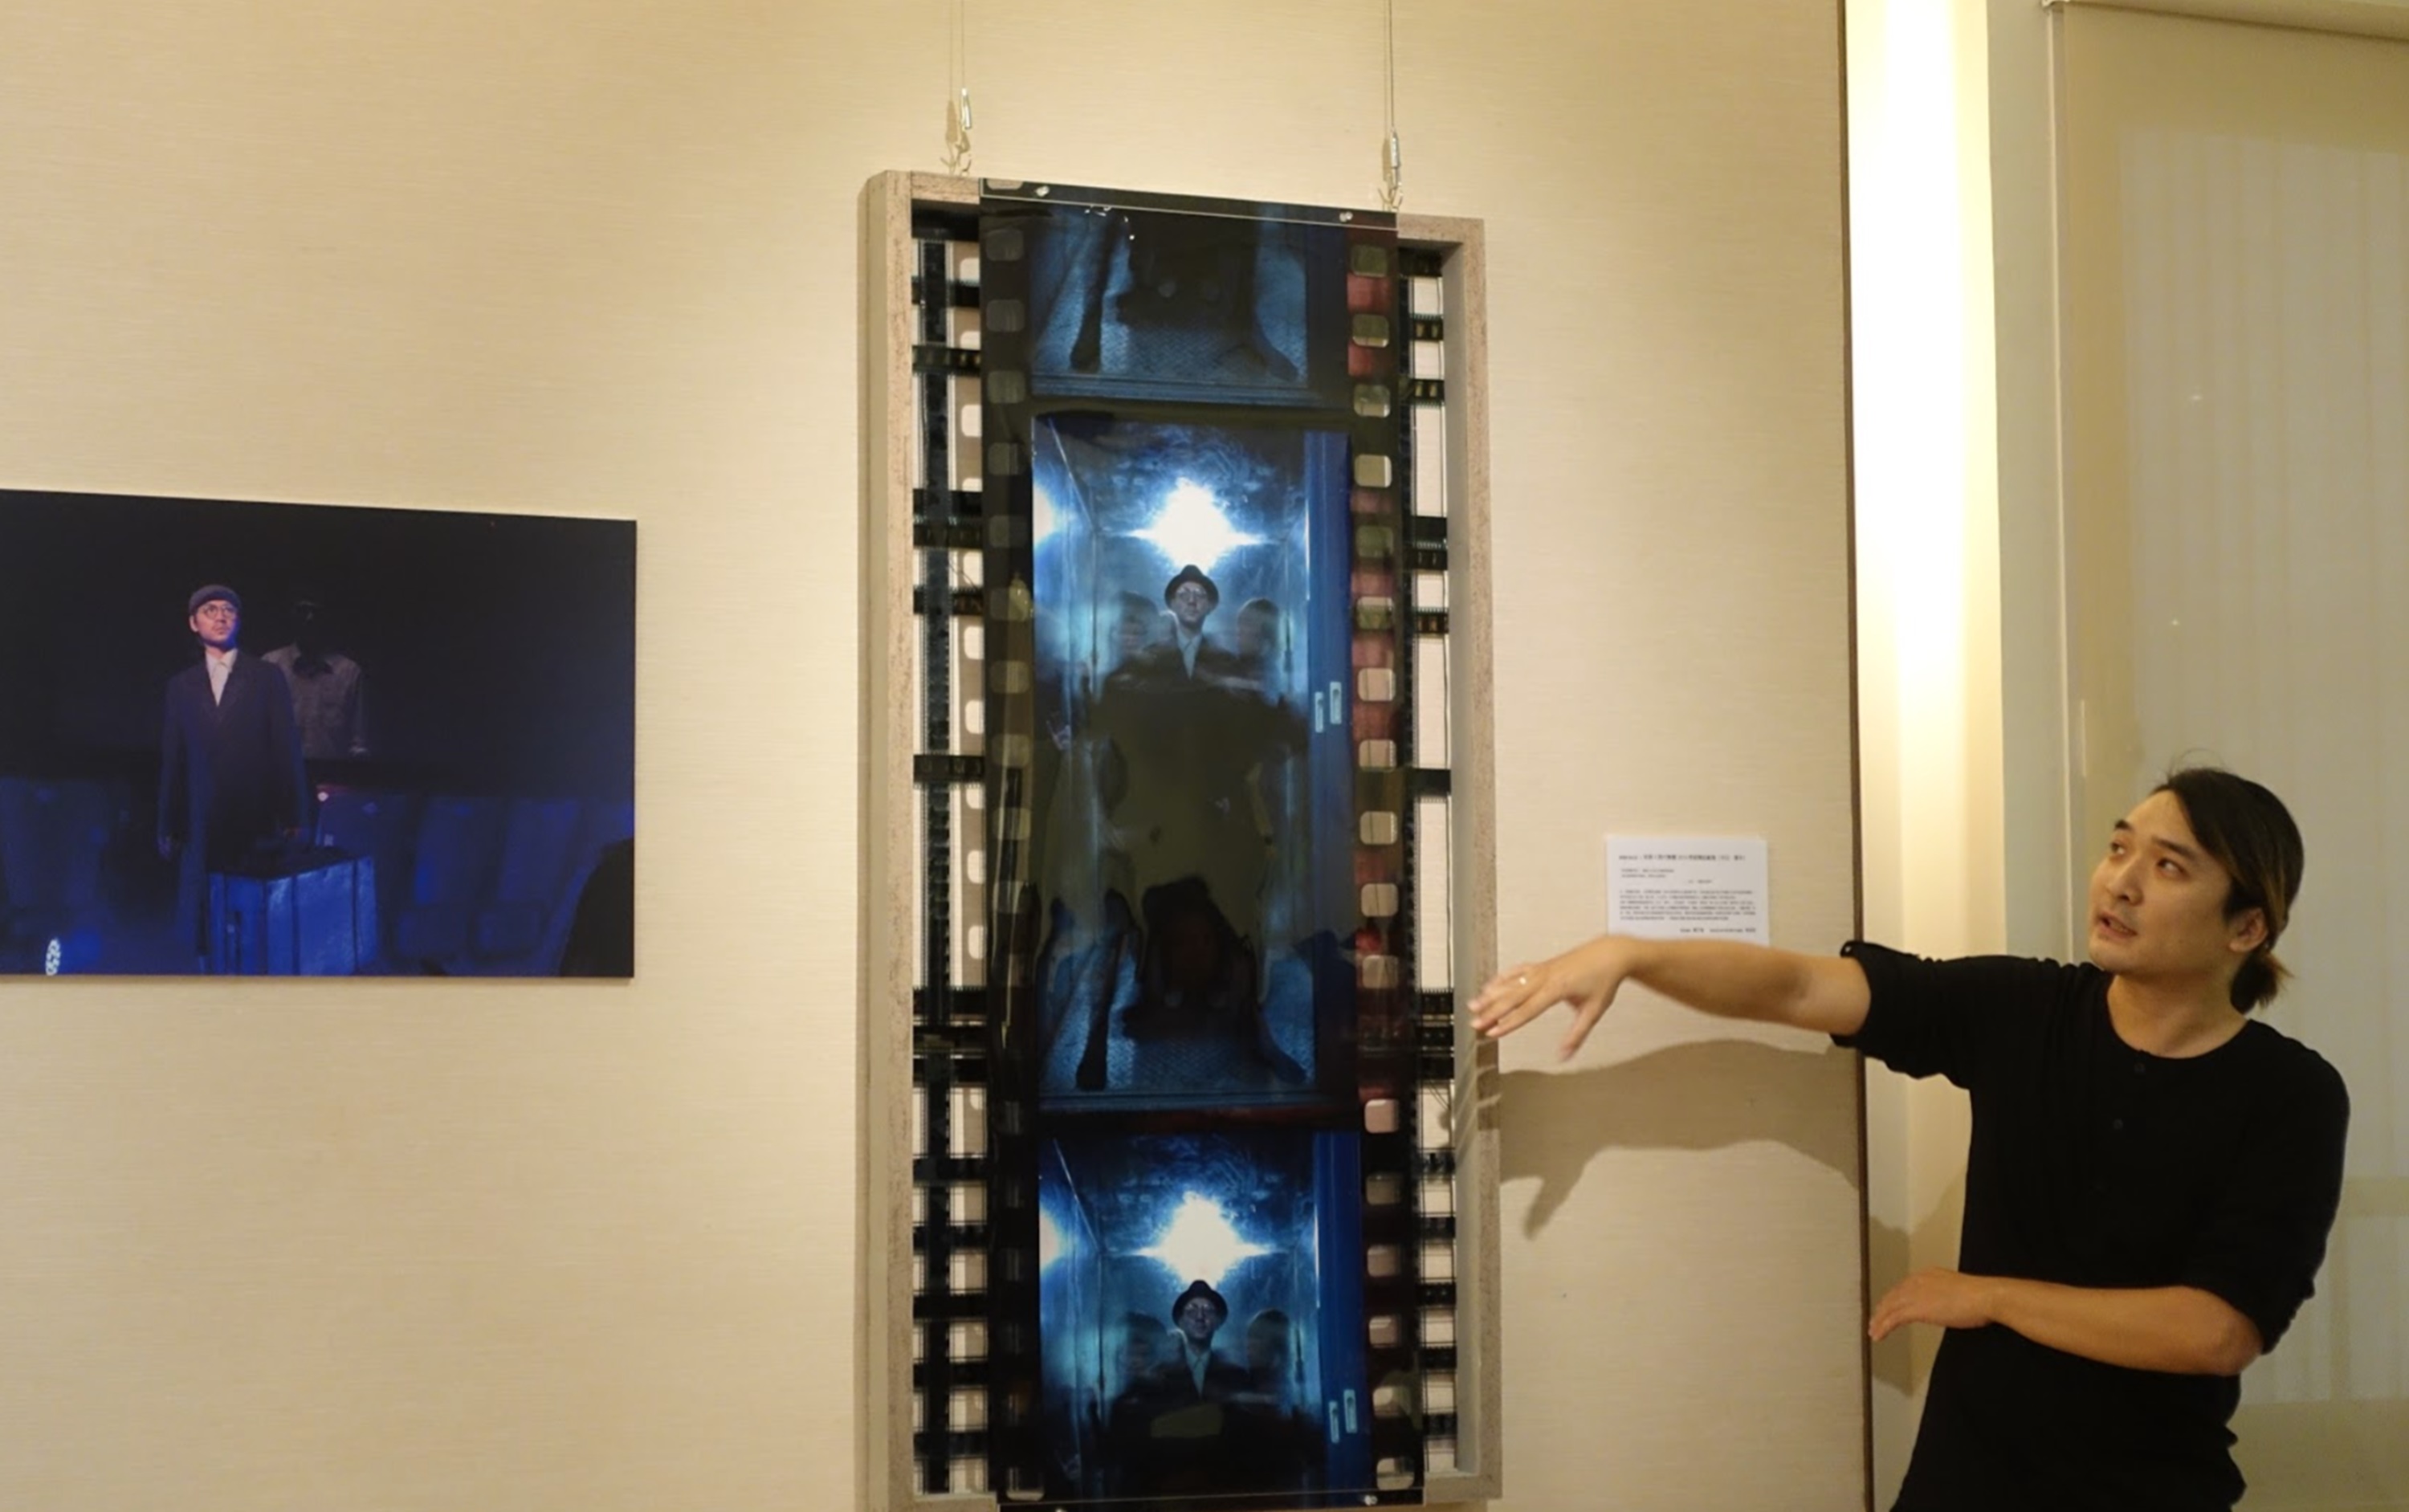 劉人豪劇場影像紀錄展於崑山科大展出 帶領學子體驗「剎那即永恆」-空間設計